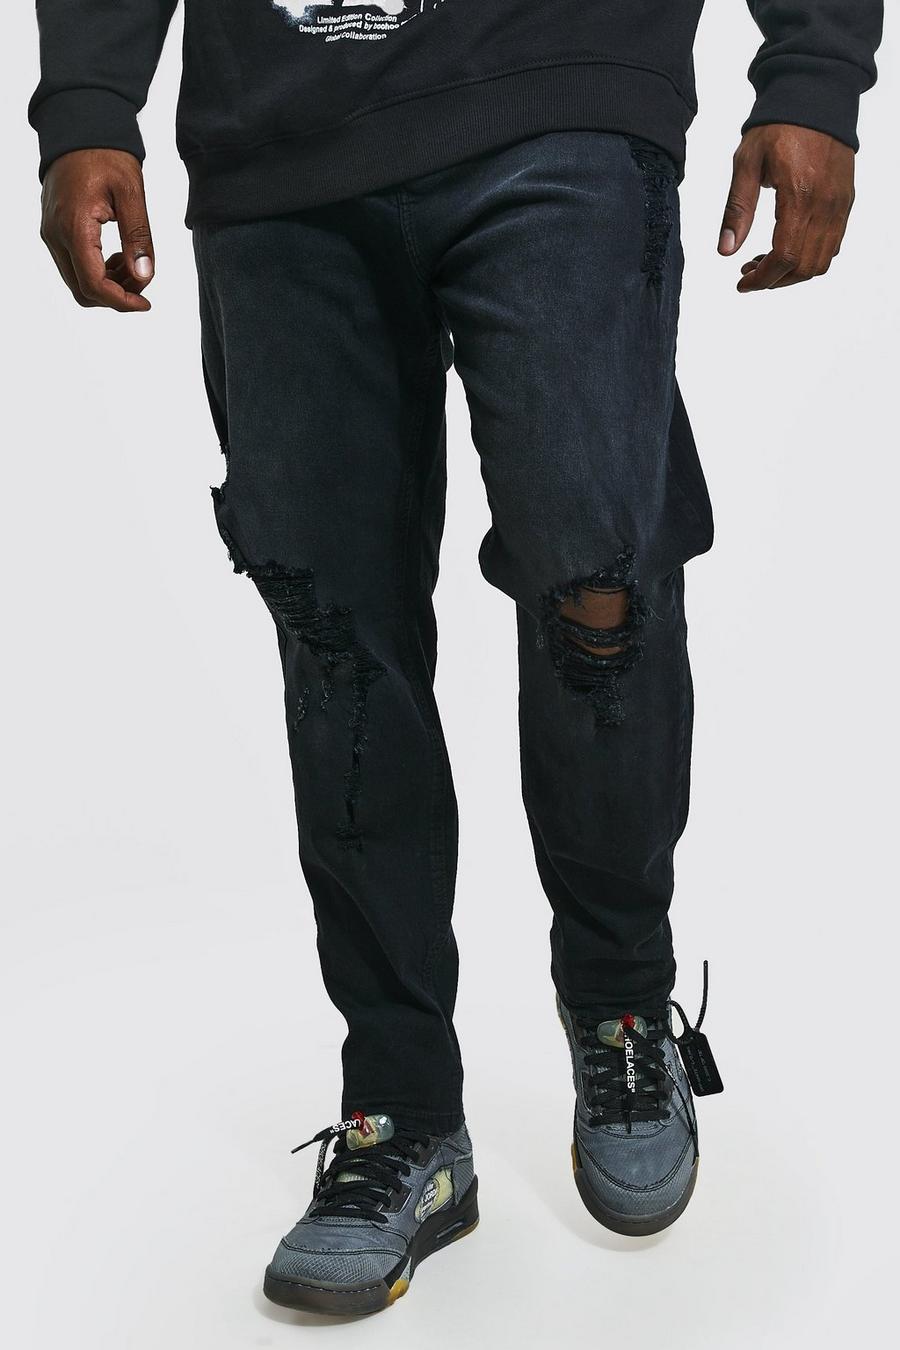 שחור דהוי סקיני ג'ינס עם קרעים ובד משופשף בברכיים, מידות גדולות image number 1